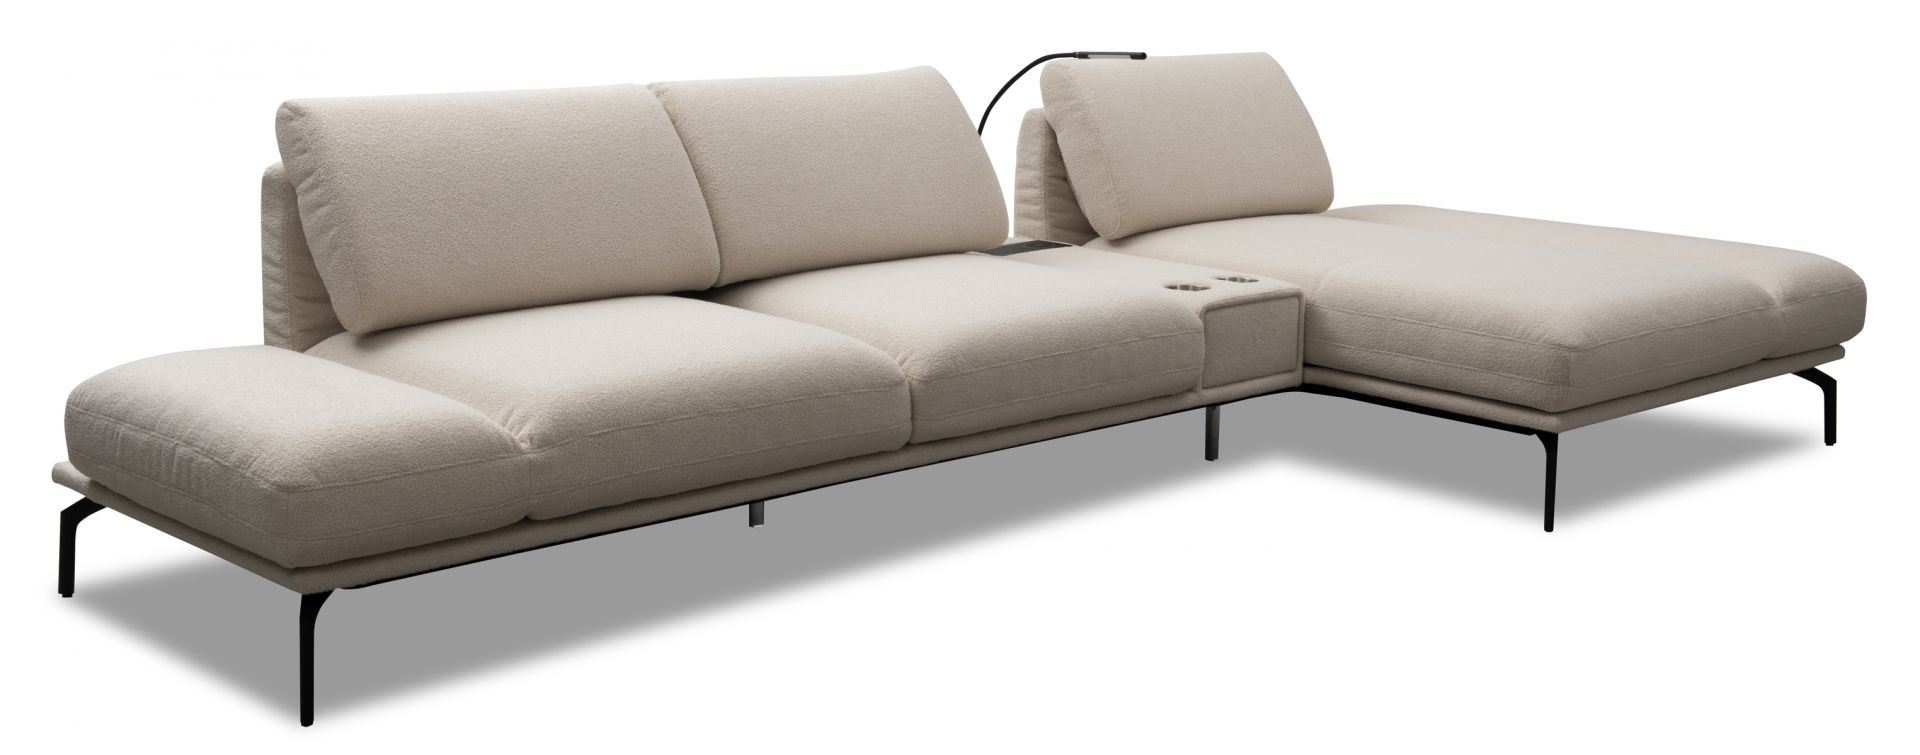 Nowoczesna sofa w tkaninie boucle - modny pomysł do salonu. Fot. mat. prasowe Kler